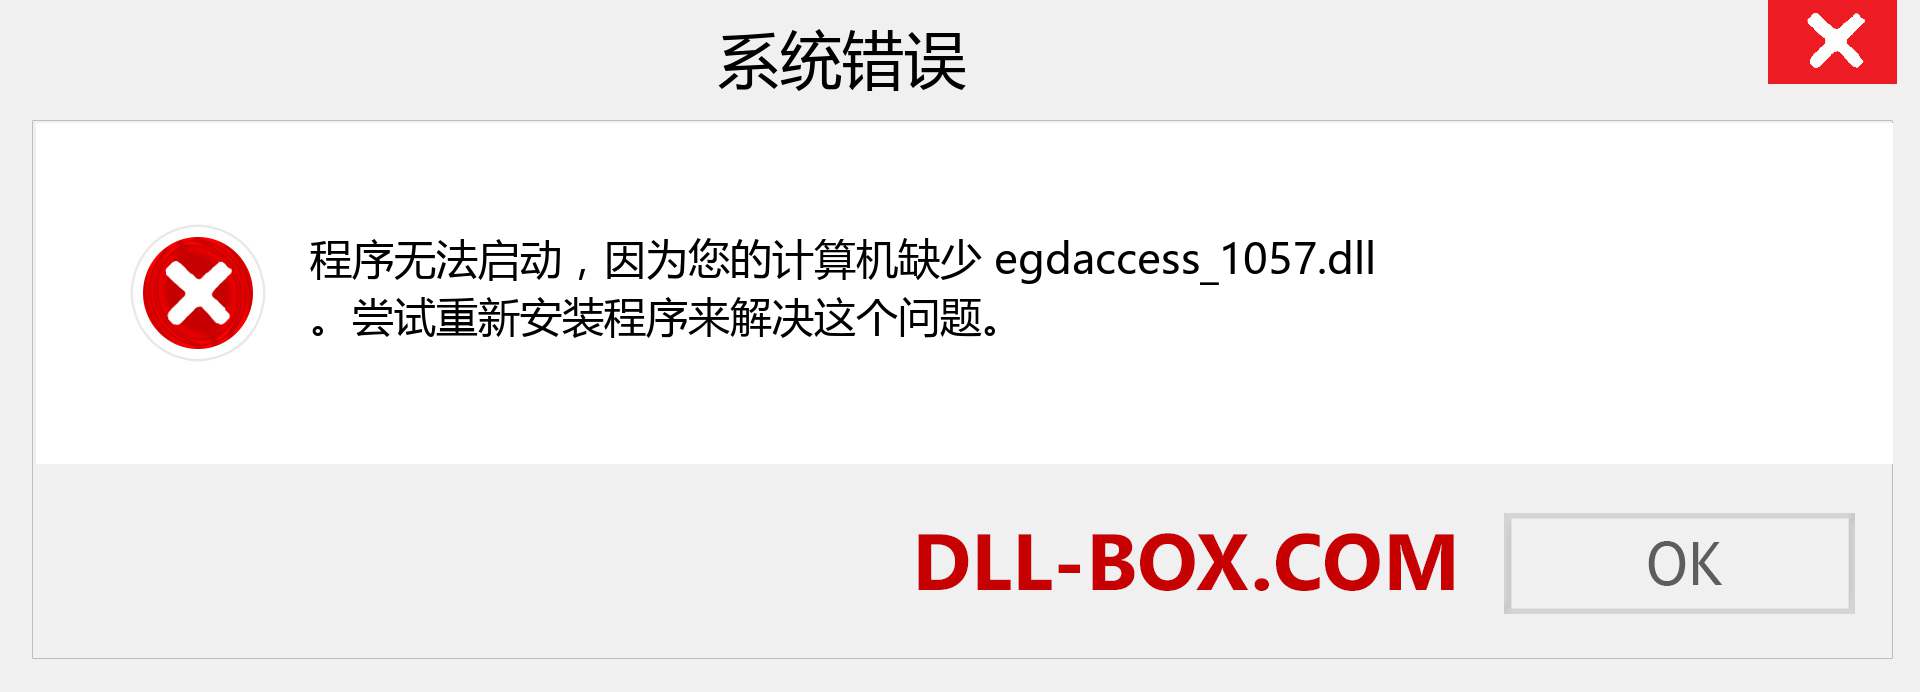 egdaccess_1057.dll 文件丢失？。 适用于 Windows 7、8、10 的下载 - 修复 Windows、照片、图像上的 egdaccess_1057 dll 丢失错误